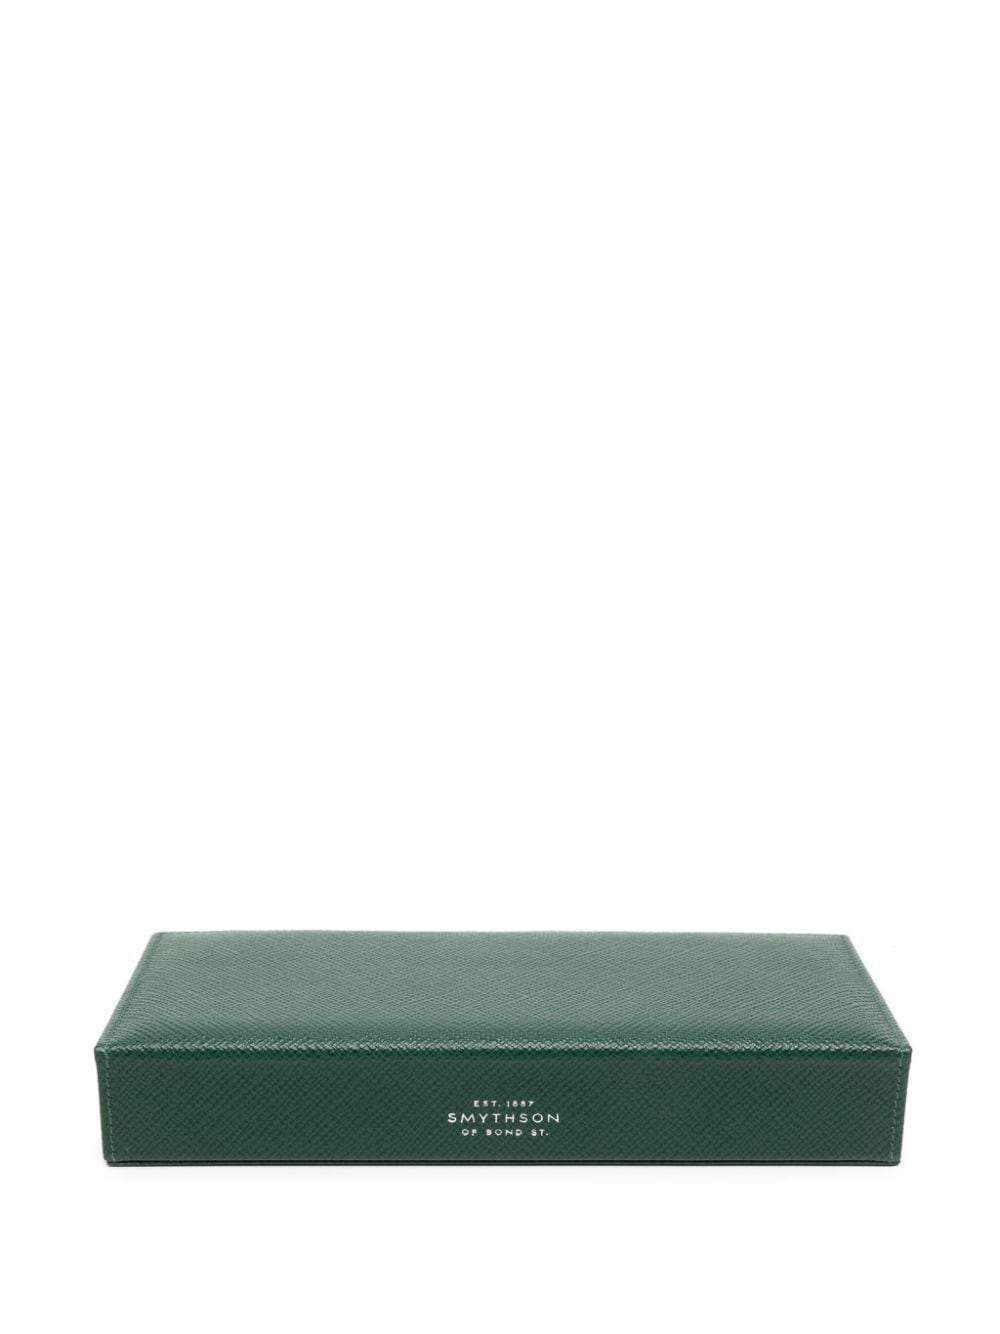 Smythson Panama leather cufflink box - Groen